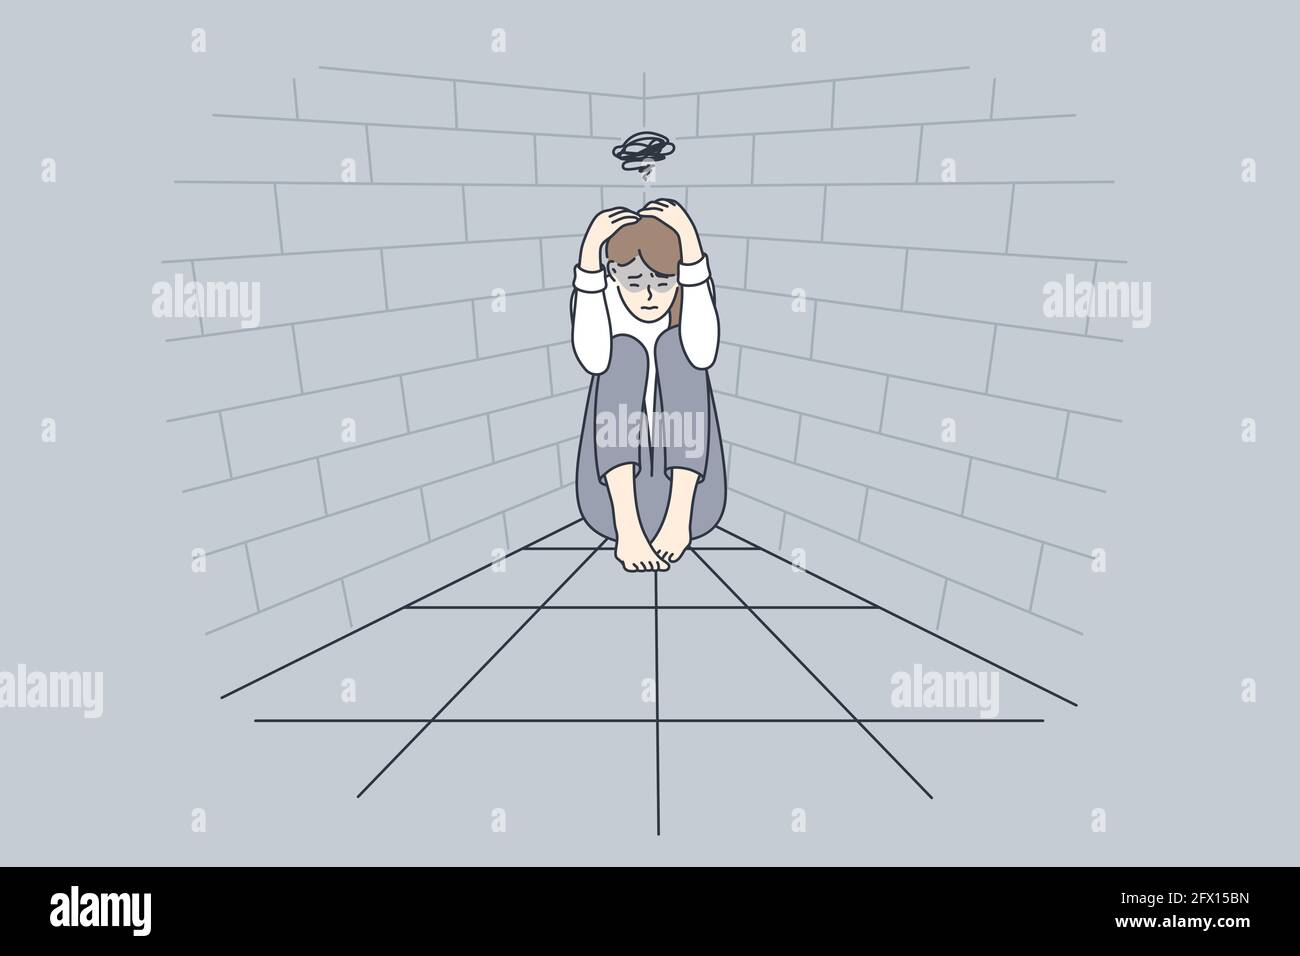 Depression, schlechte Gedanken, Trauer Konzept. Junge traurige Frau Zeichentrickfigur auf dem Boden sitzend berühren Kopf leiden Depression Gefühl nach unten Vektor-Illustration Stock Vektor